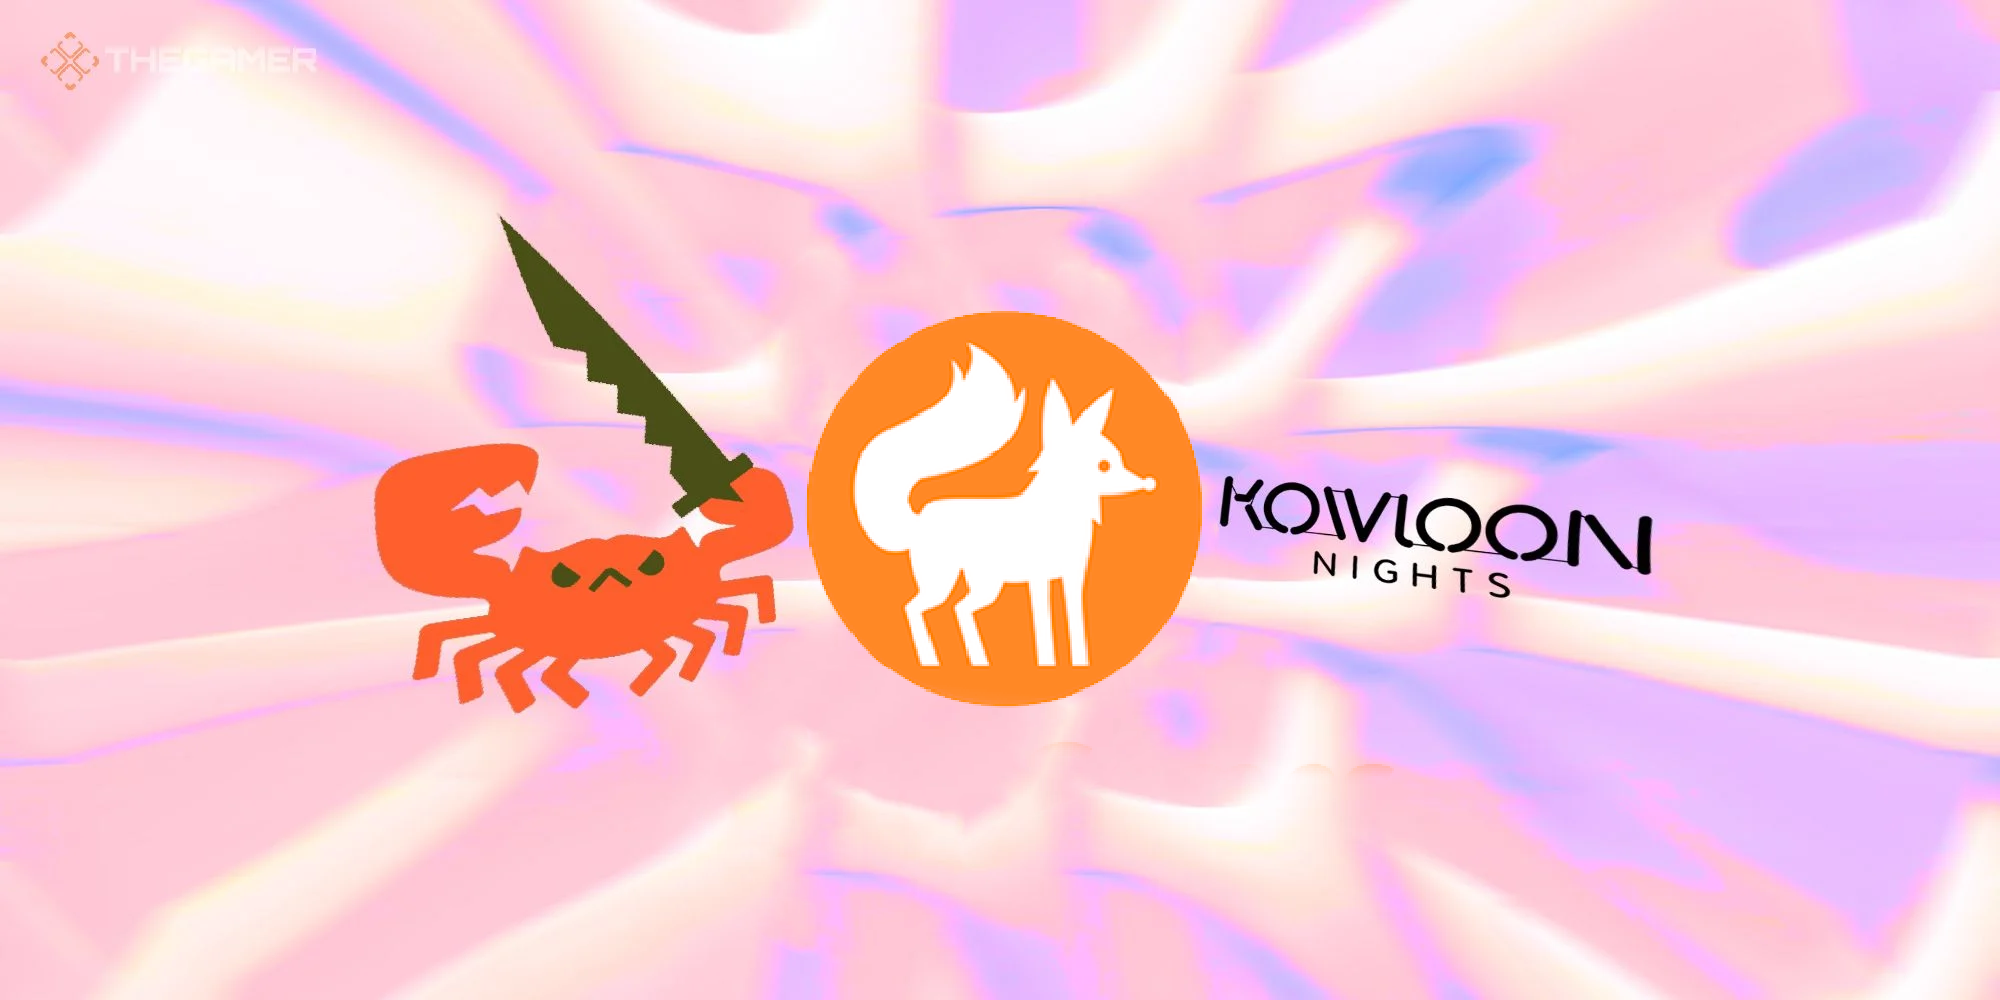 kowloon nights kit fox and aggro crab logos